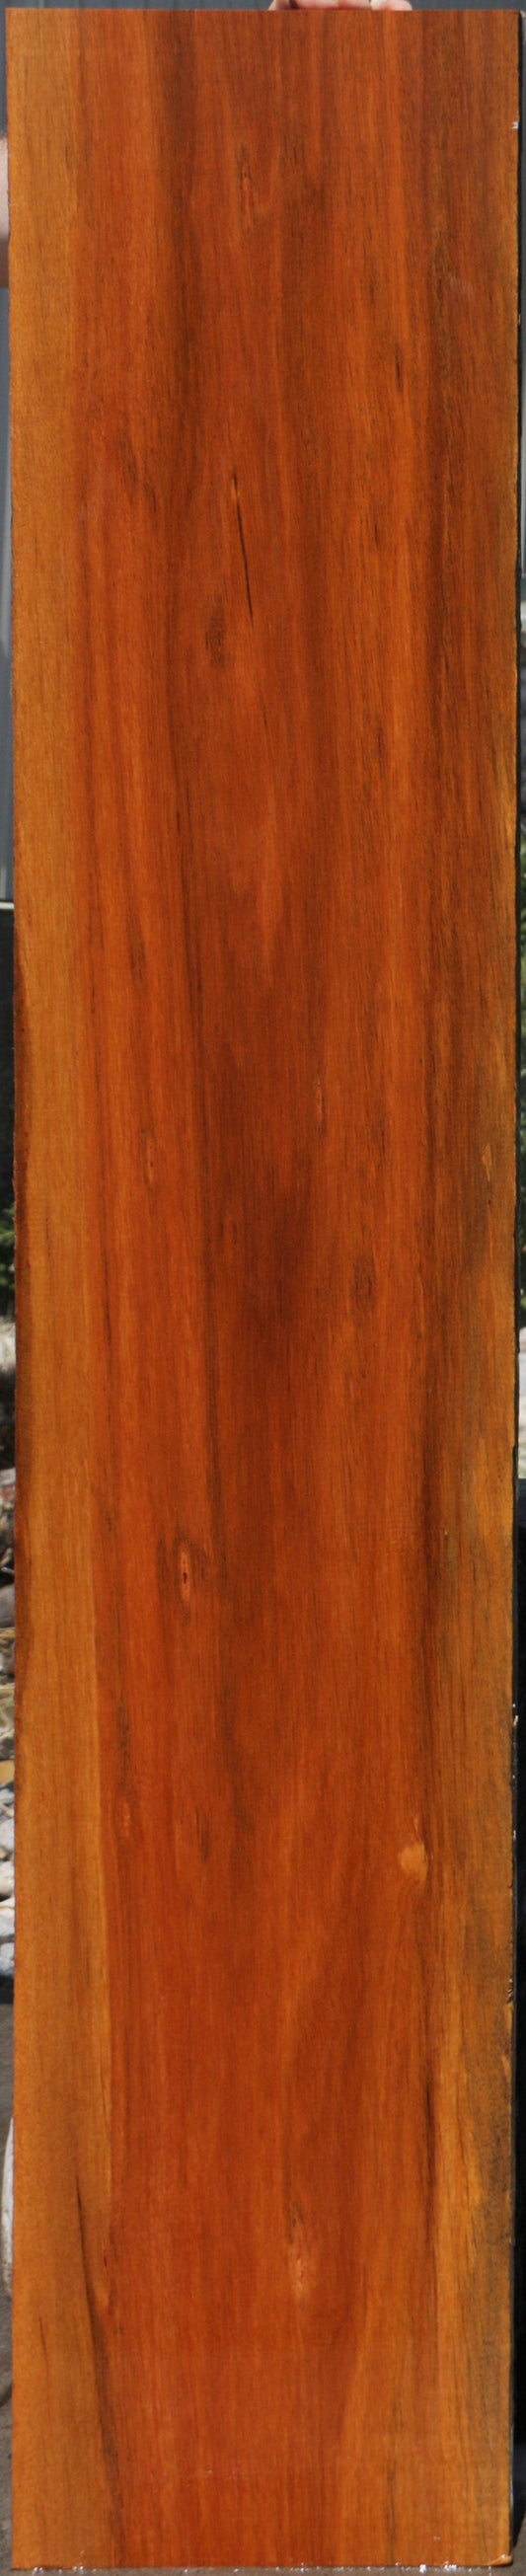 Brasiletta Lumber